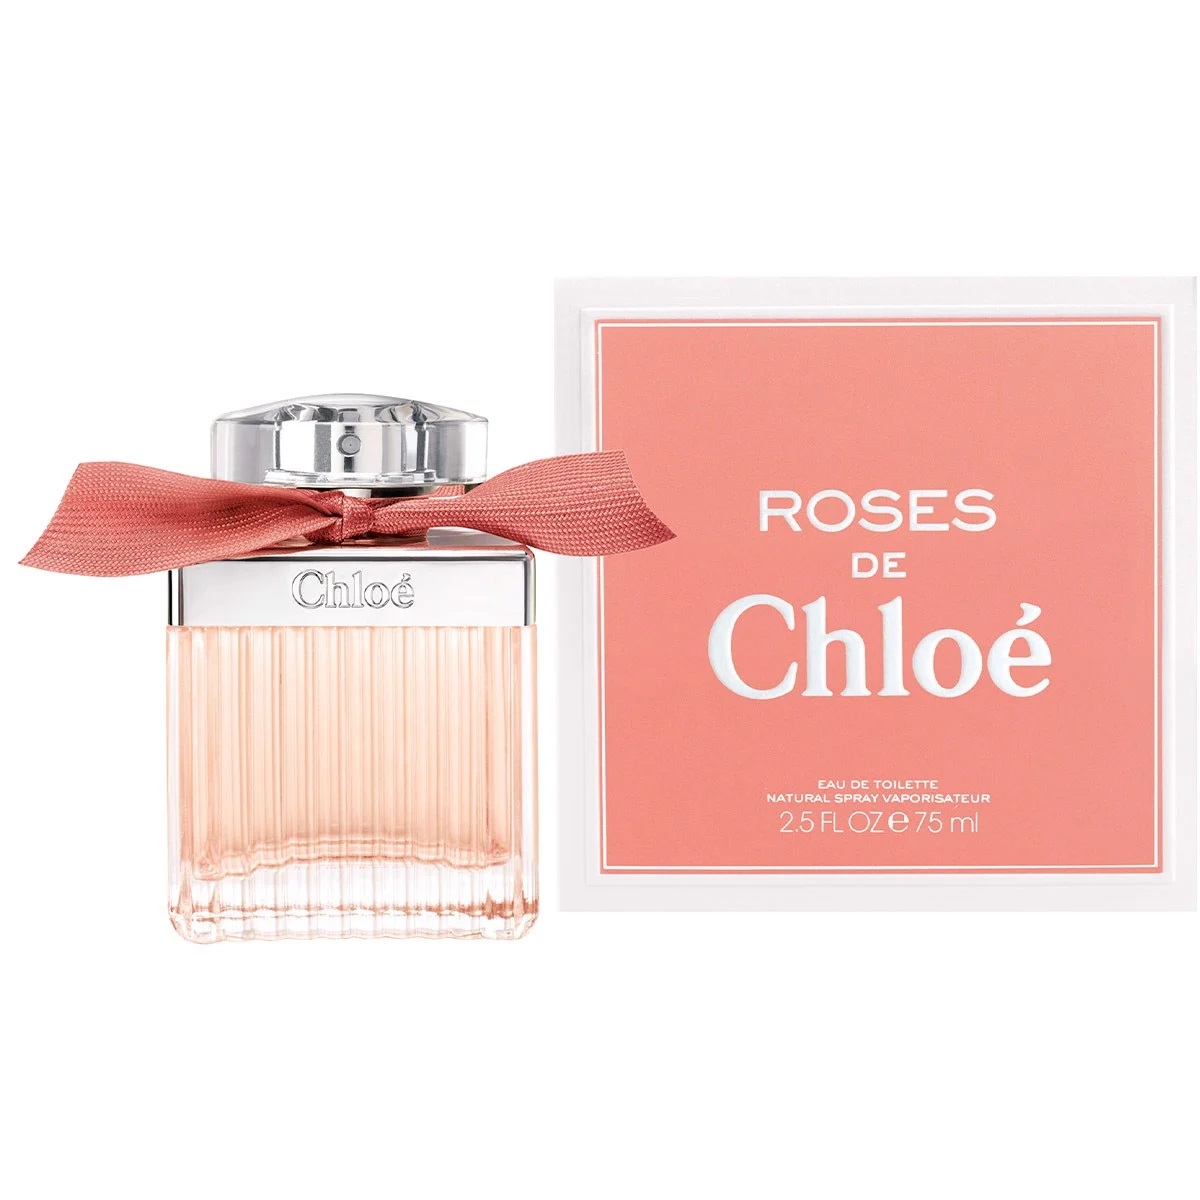 NƯỚC HOA NỮ CHLOE ROSES DE CHLOE EAU DE TOILETTE 3